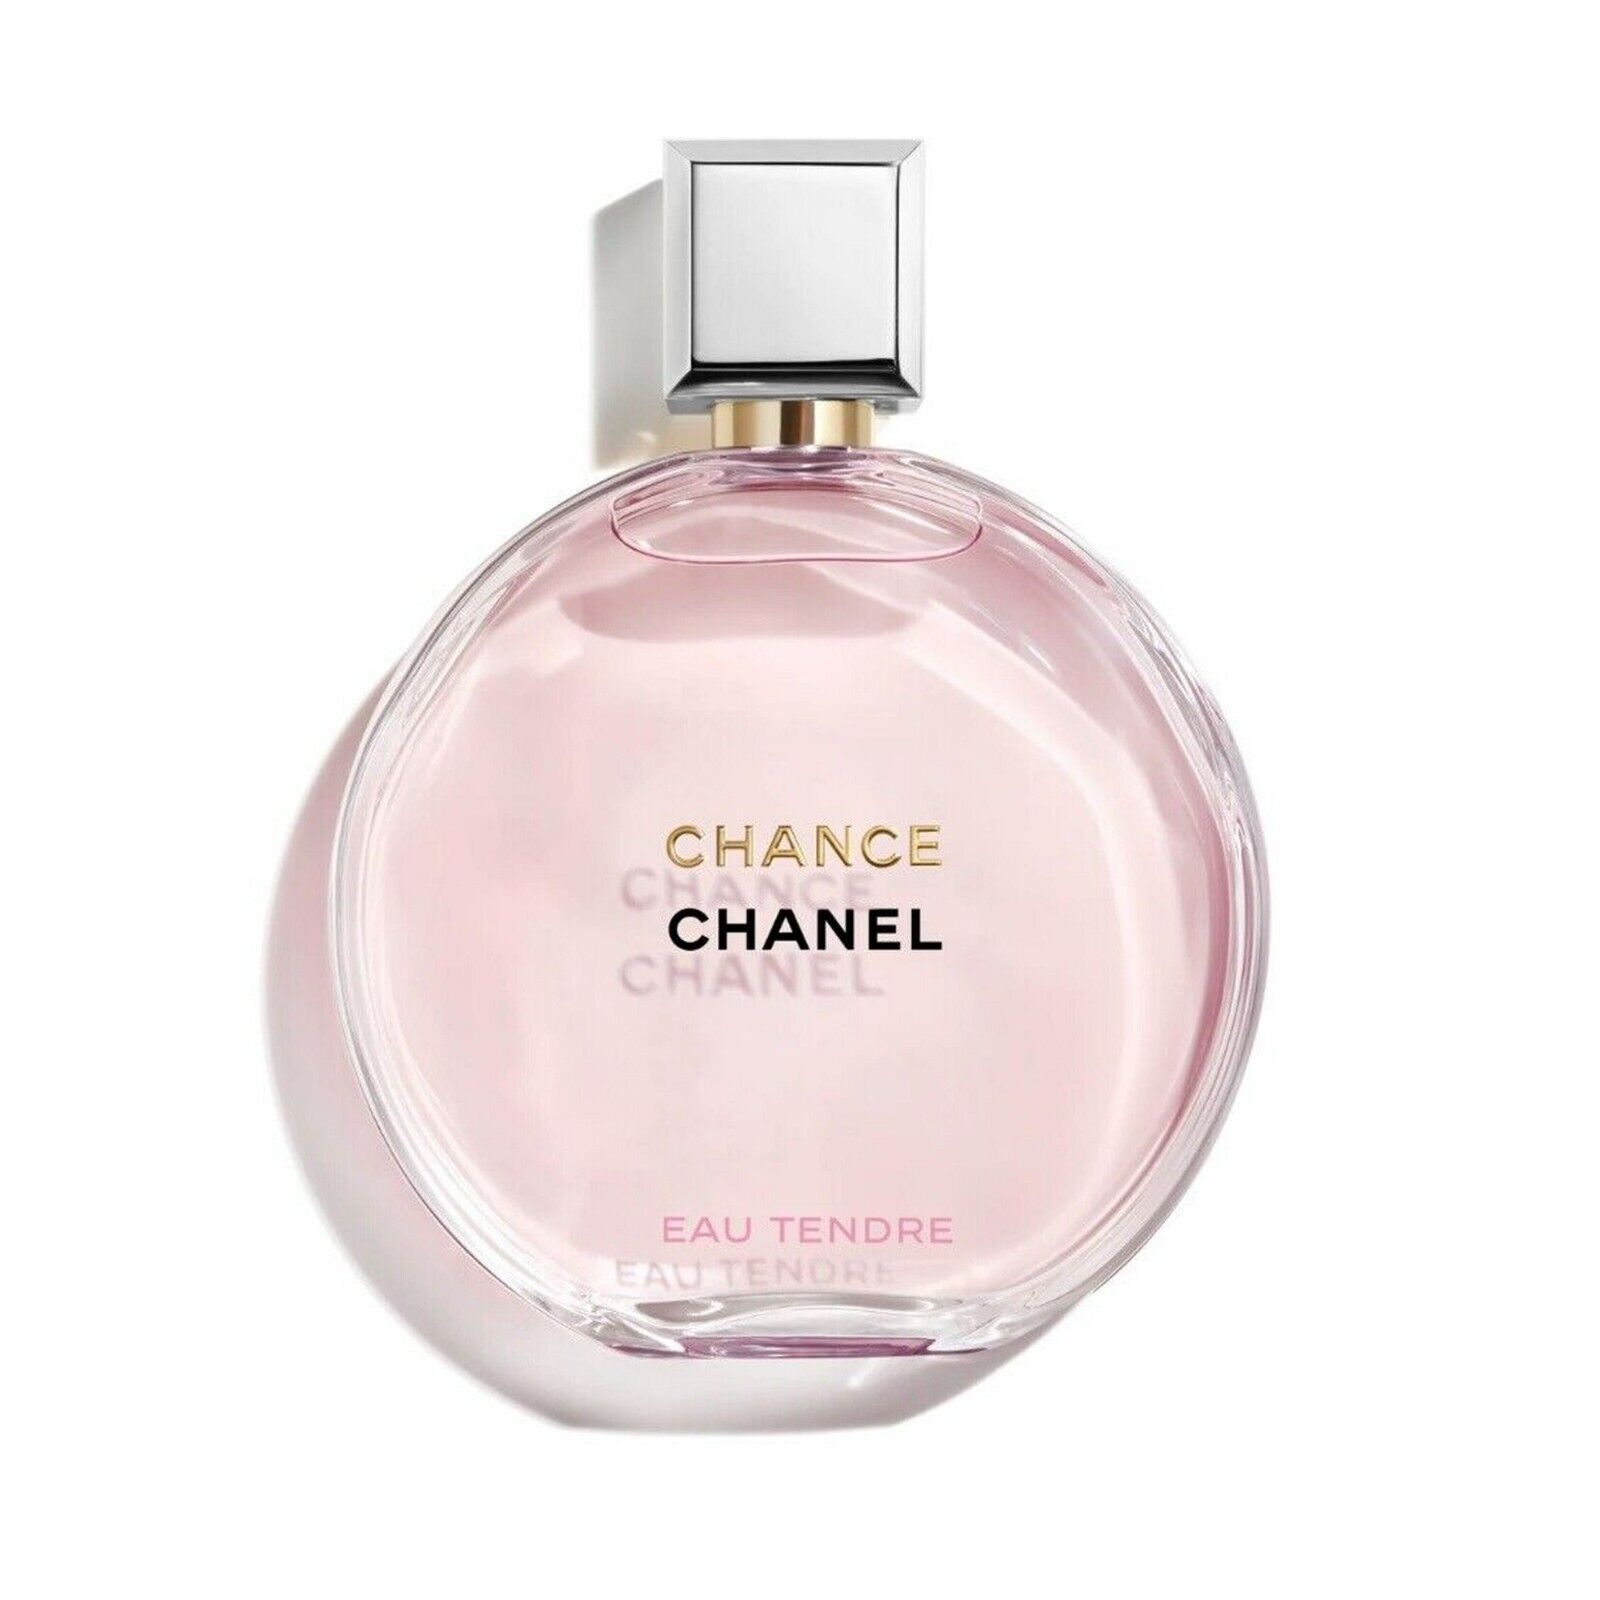 Cha-nel_ Chance Eau Tendre Eau De Parfum Spray, Perfume for Women, 3.4 oz New